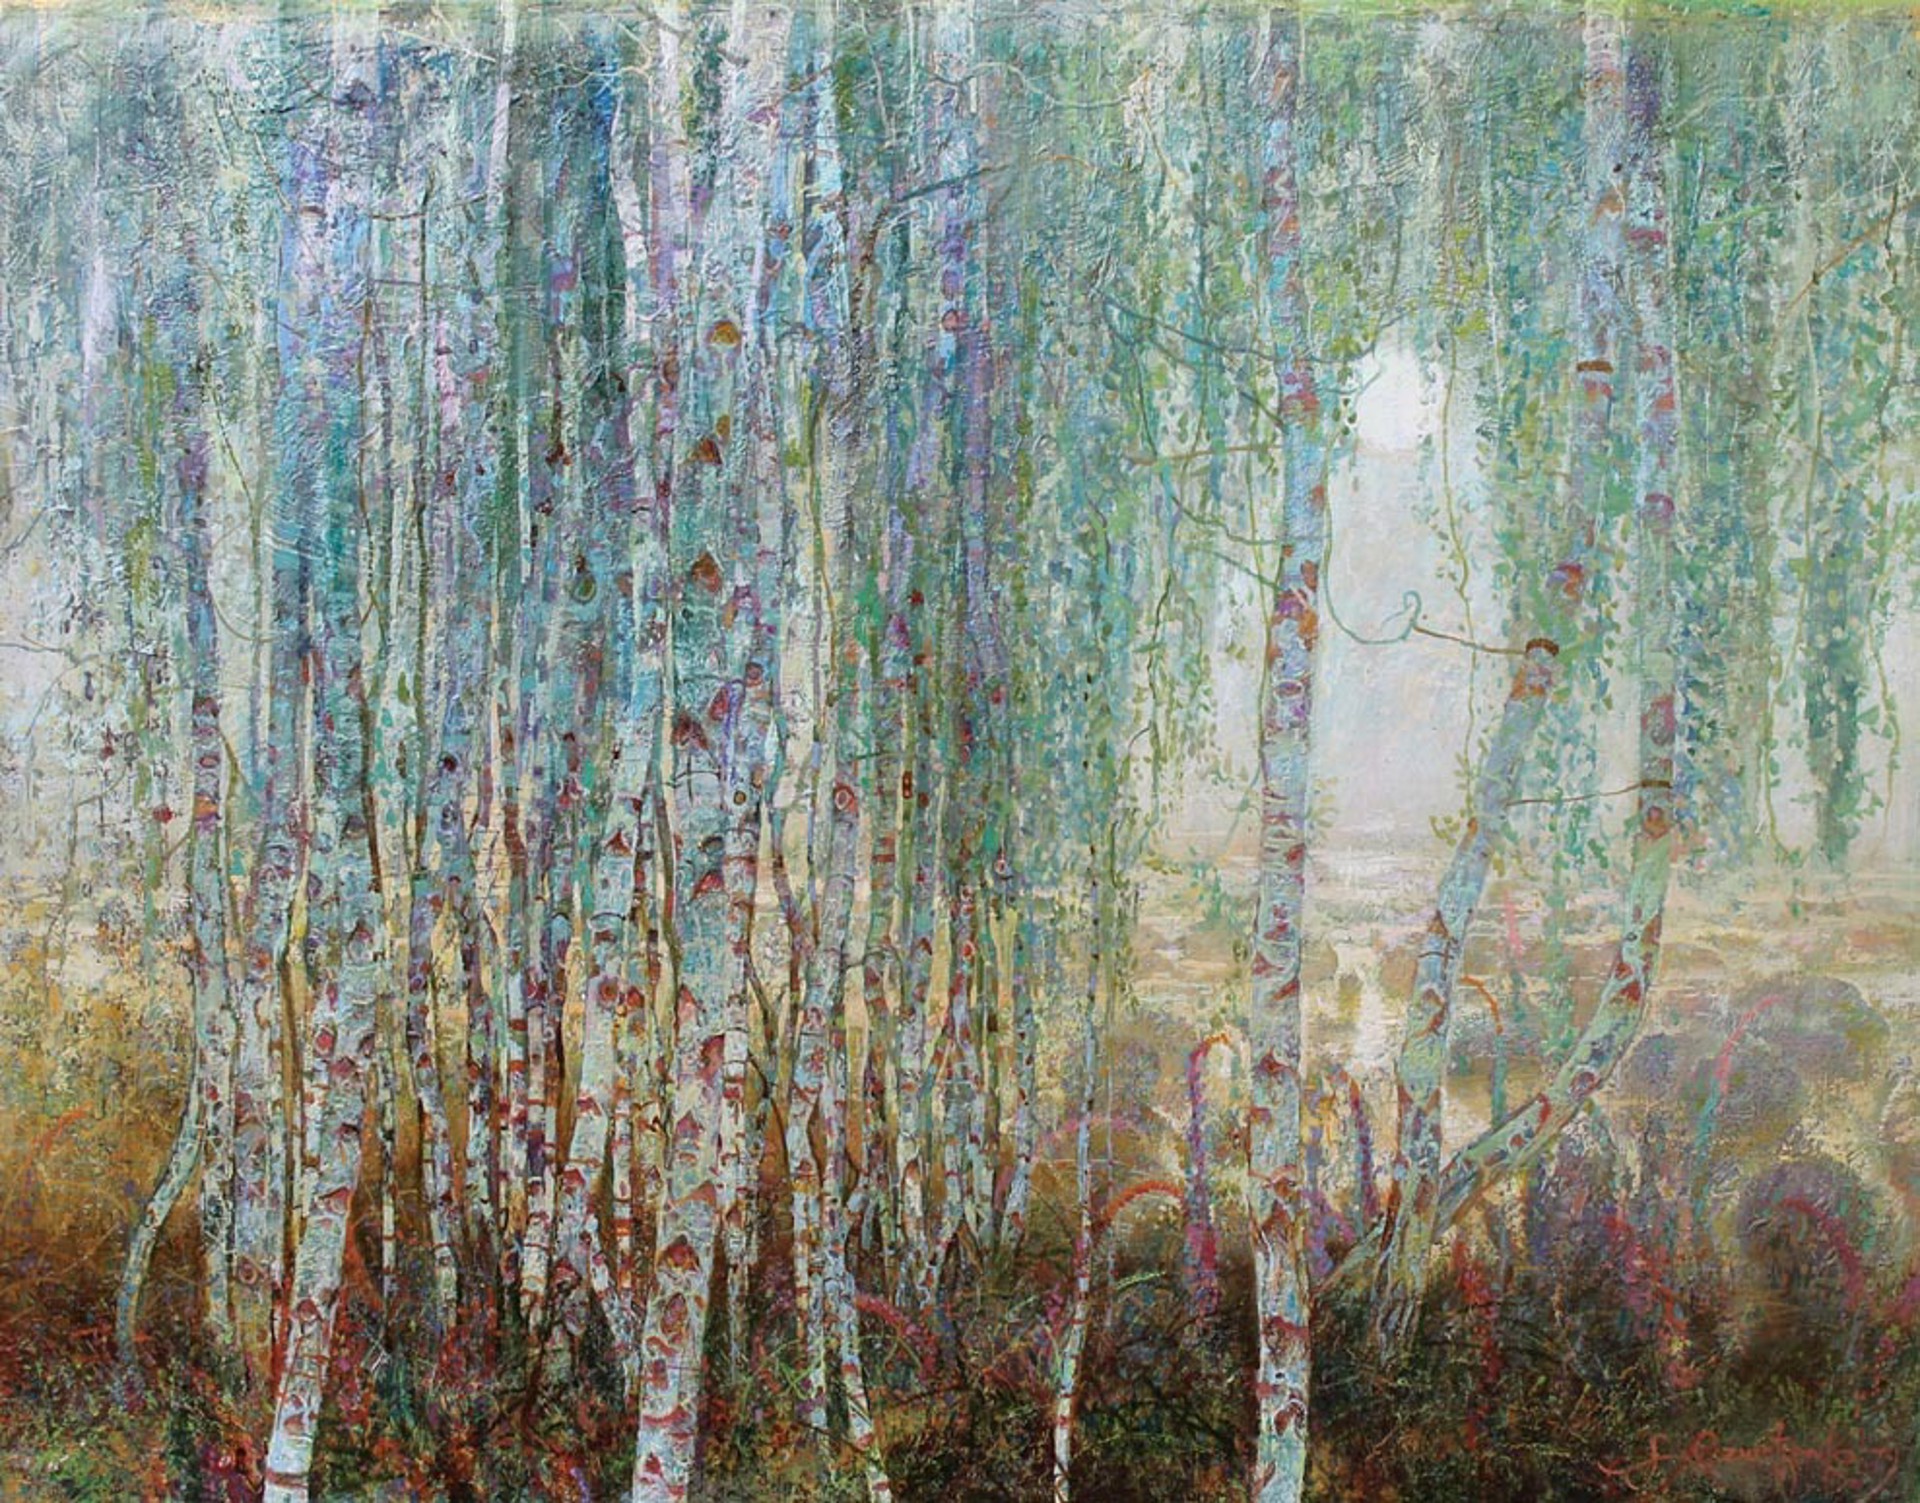 Moon, Birches in the Mist by Aleksandr Reznichenko